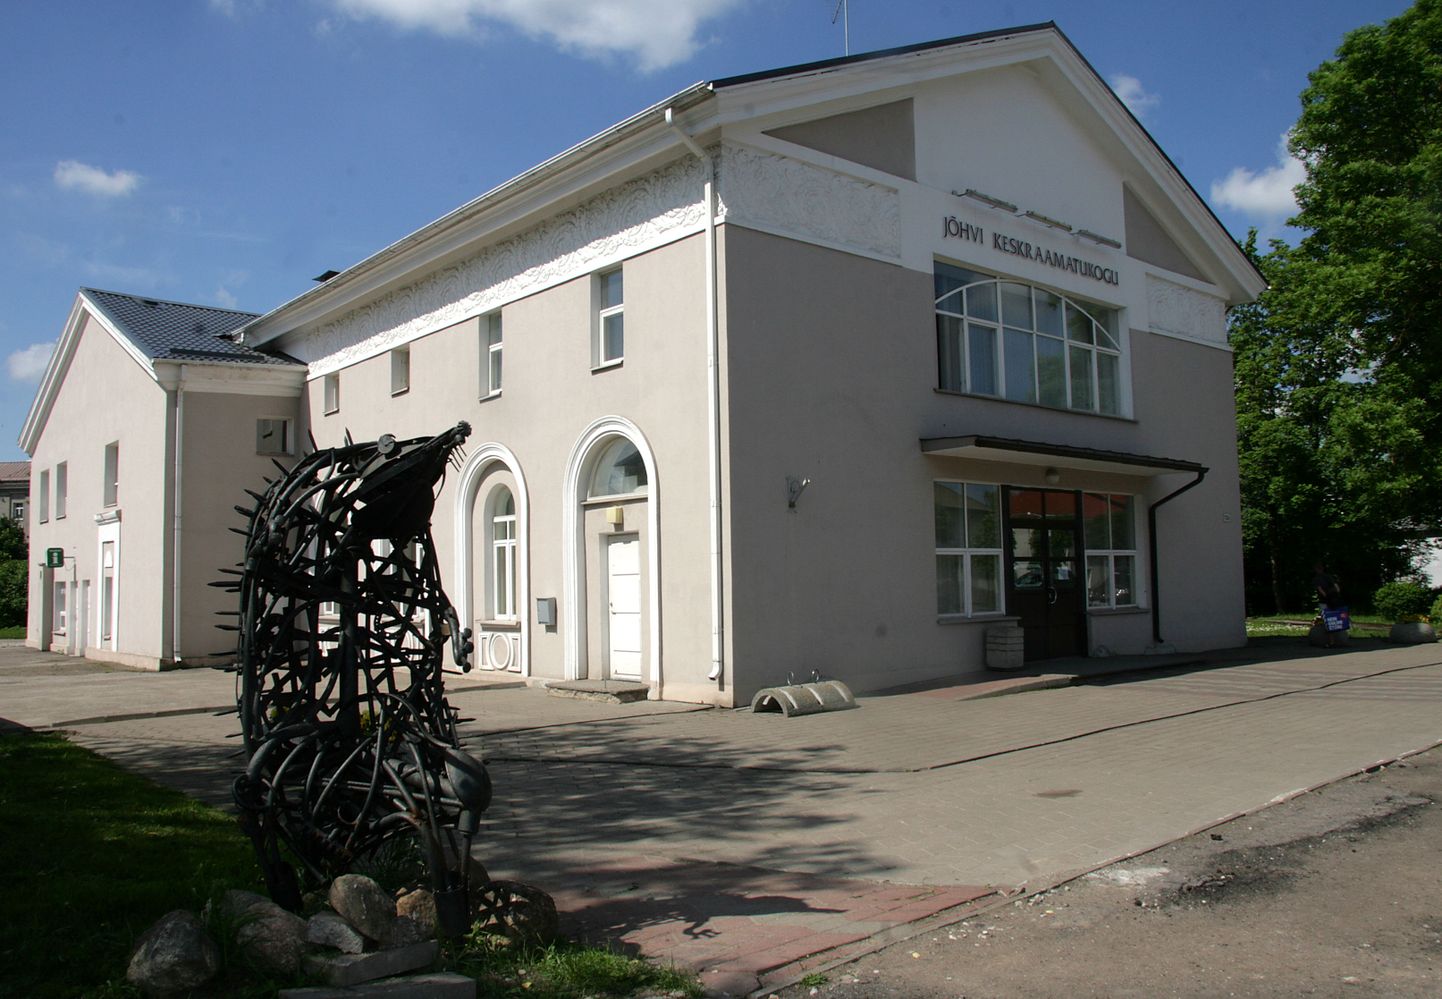 Сейчас Йыхвиская библиотека расположена в бывшем здании кинотеатра на улице Раквере.